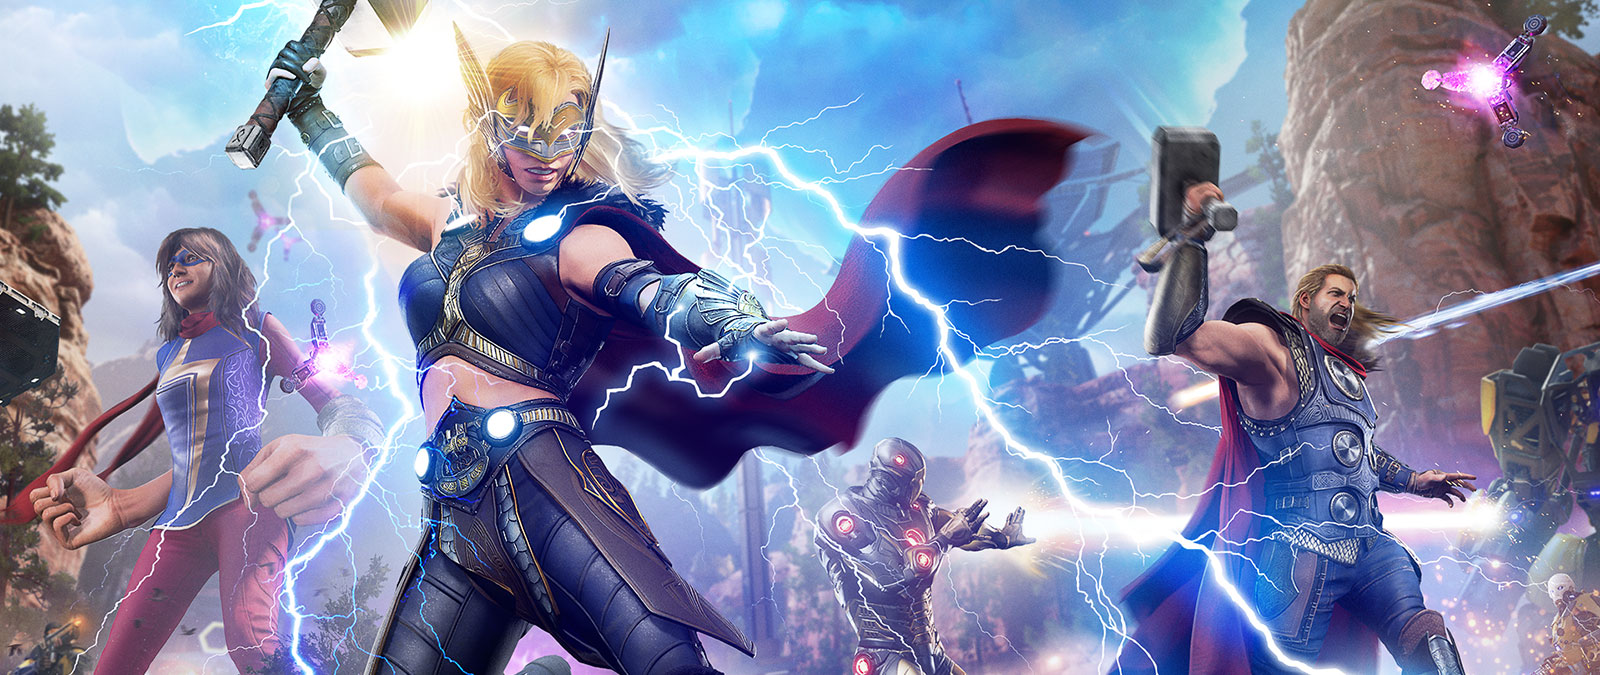 Jane Foster, de machtige Thor, lost een bliksemschicht op een mechanische vijand.